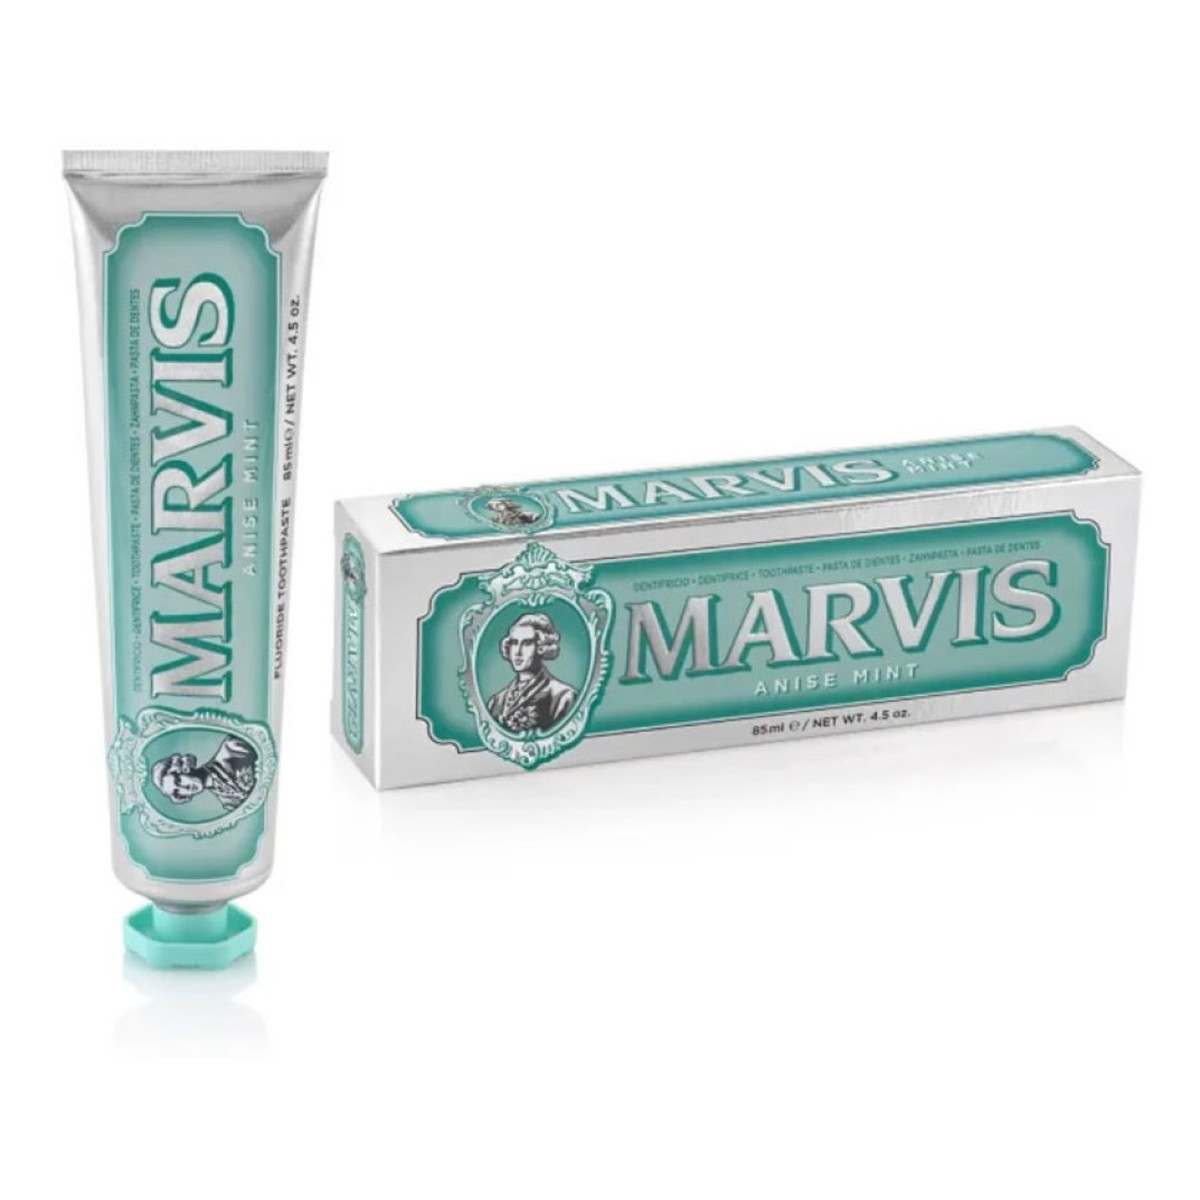 Marvis Fluoride toothpaste pasta do zębów z fluorem anise mint 85ml